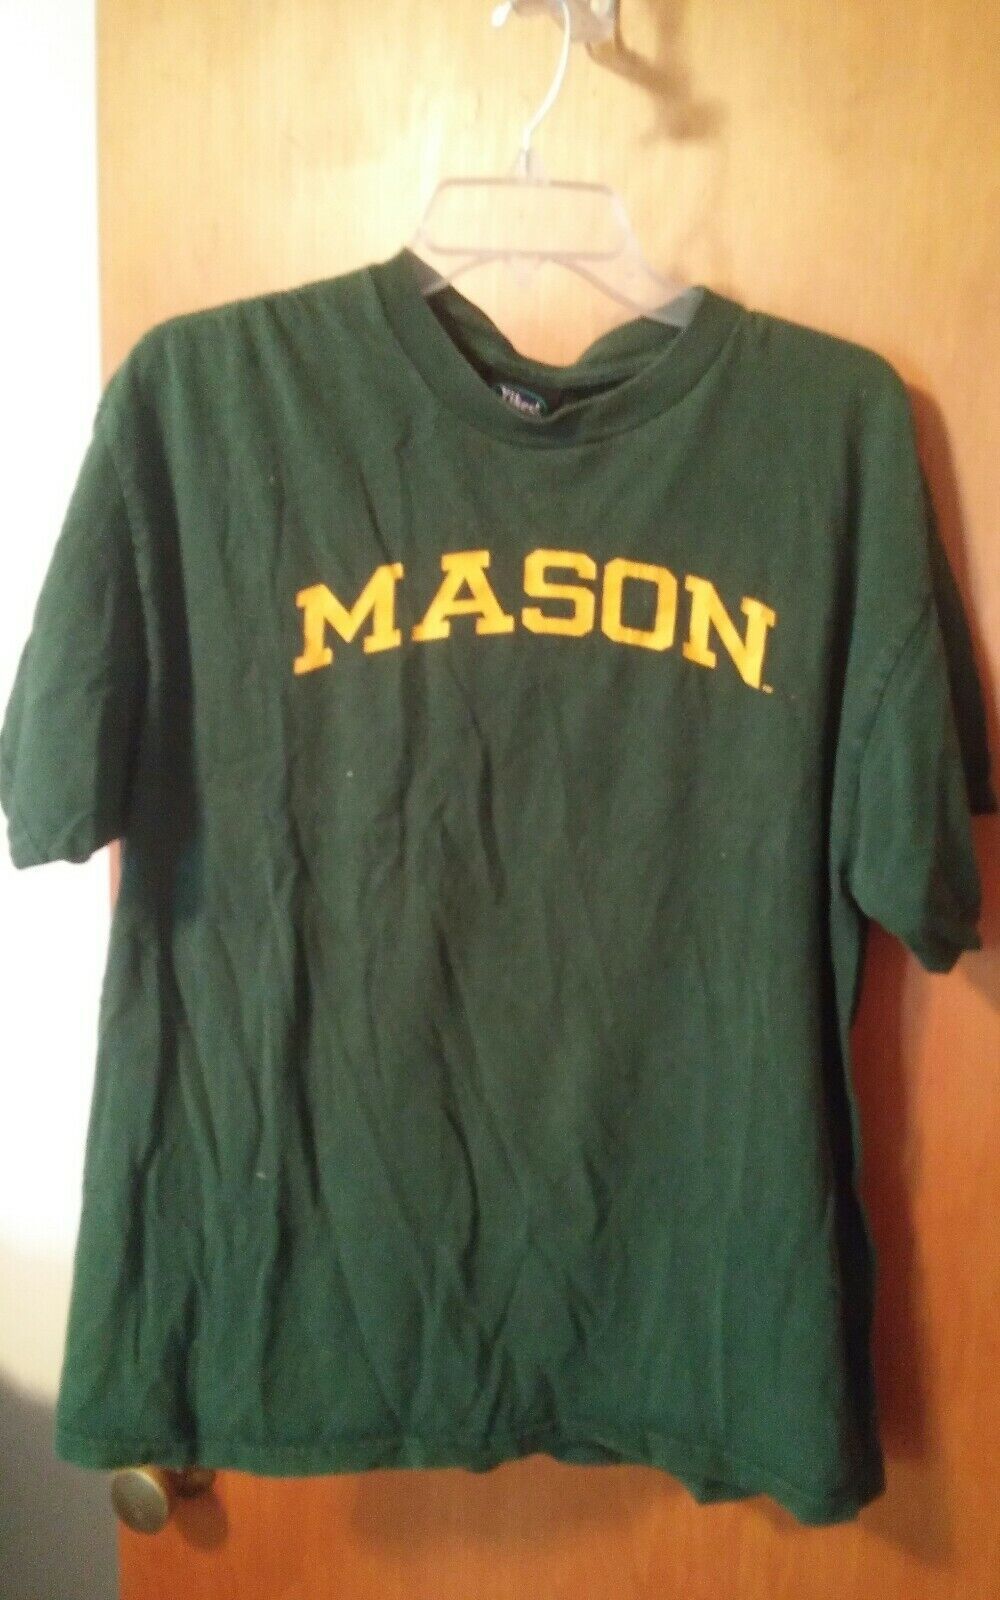 Primary image for Yikes Mason Green TShirt Size Large George Mason?